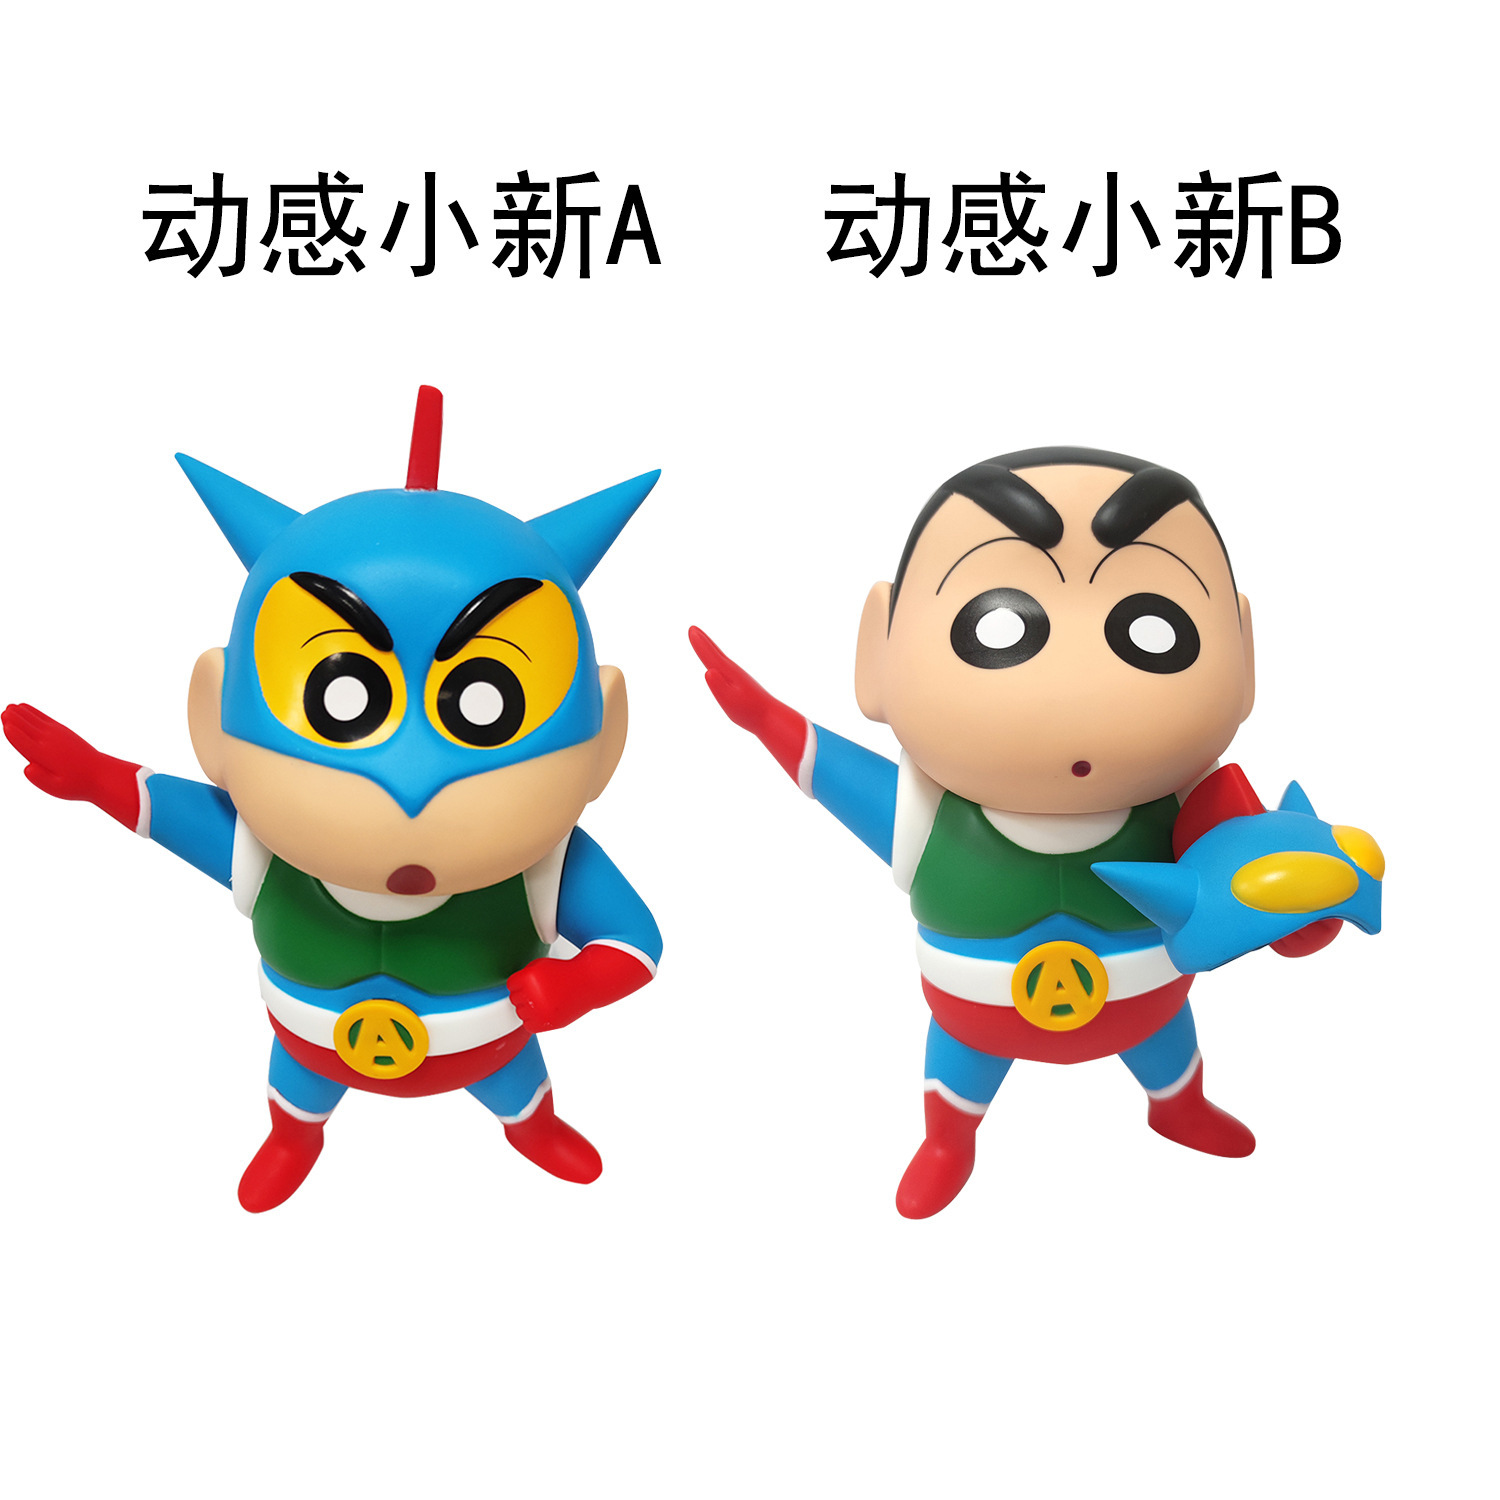 咸蛋超人蜡笔小新手办玩具生日礼物日本动漫二次元动感超人周边